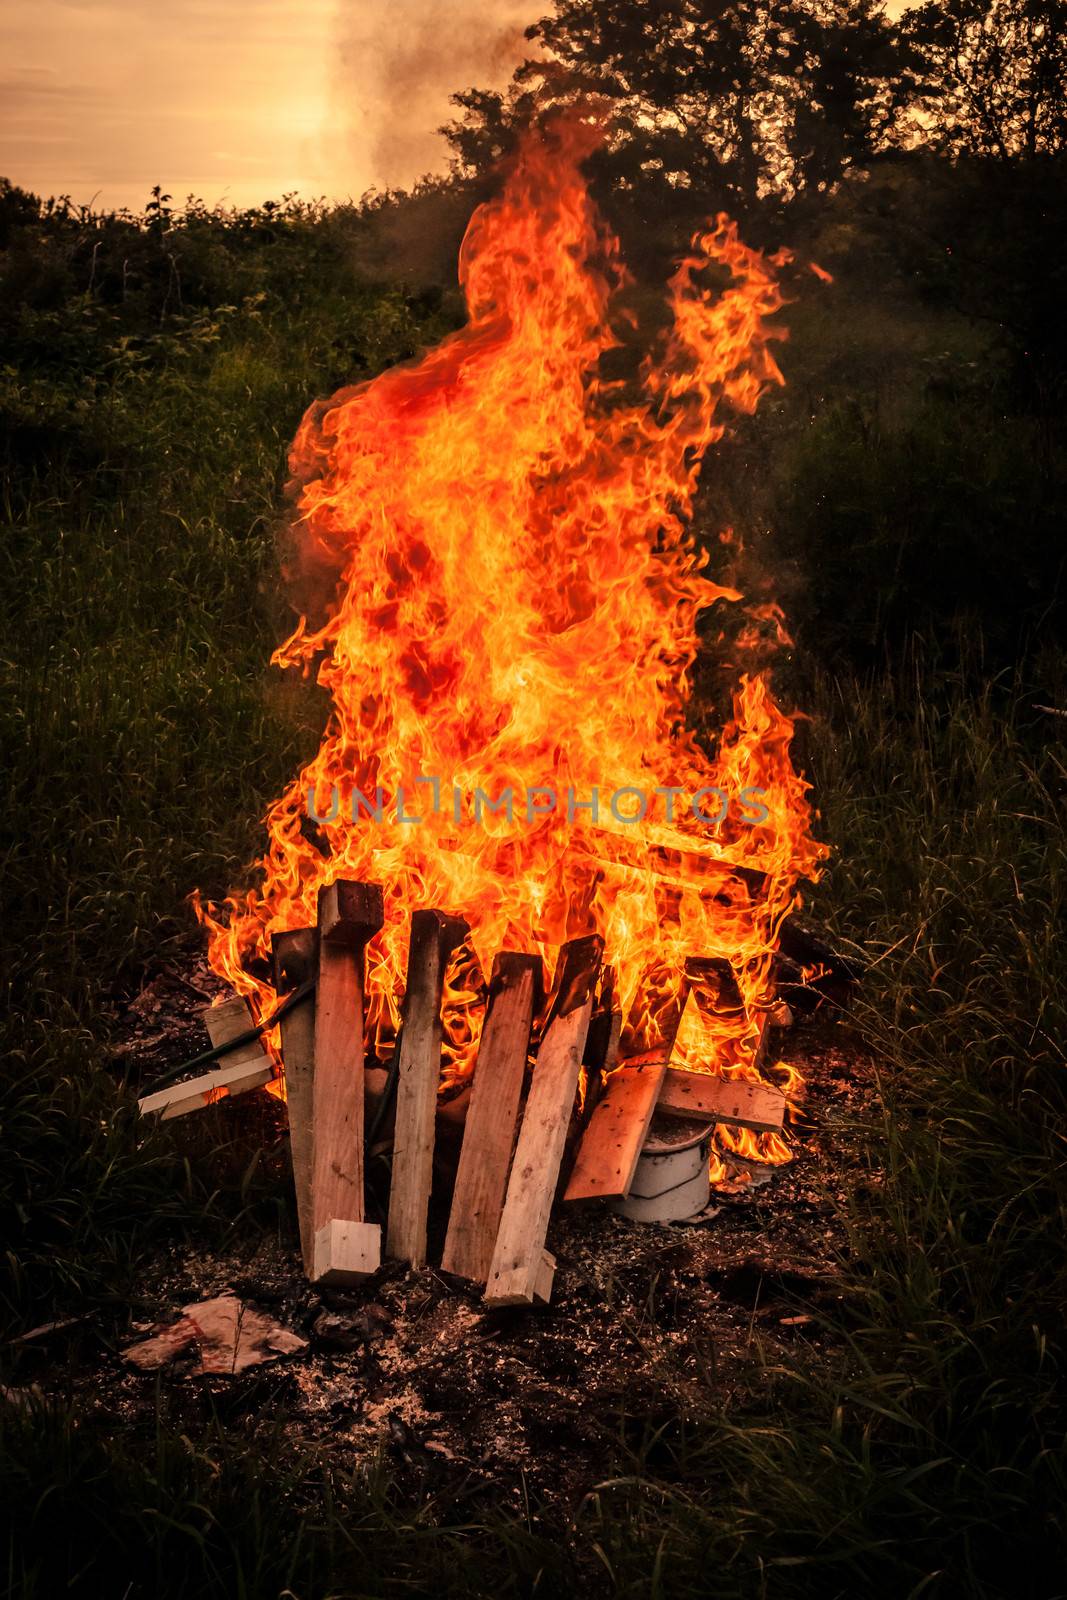 Bonfire scenery by Sportactive